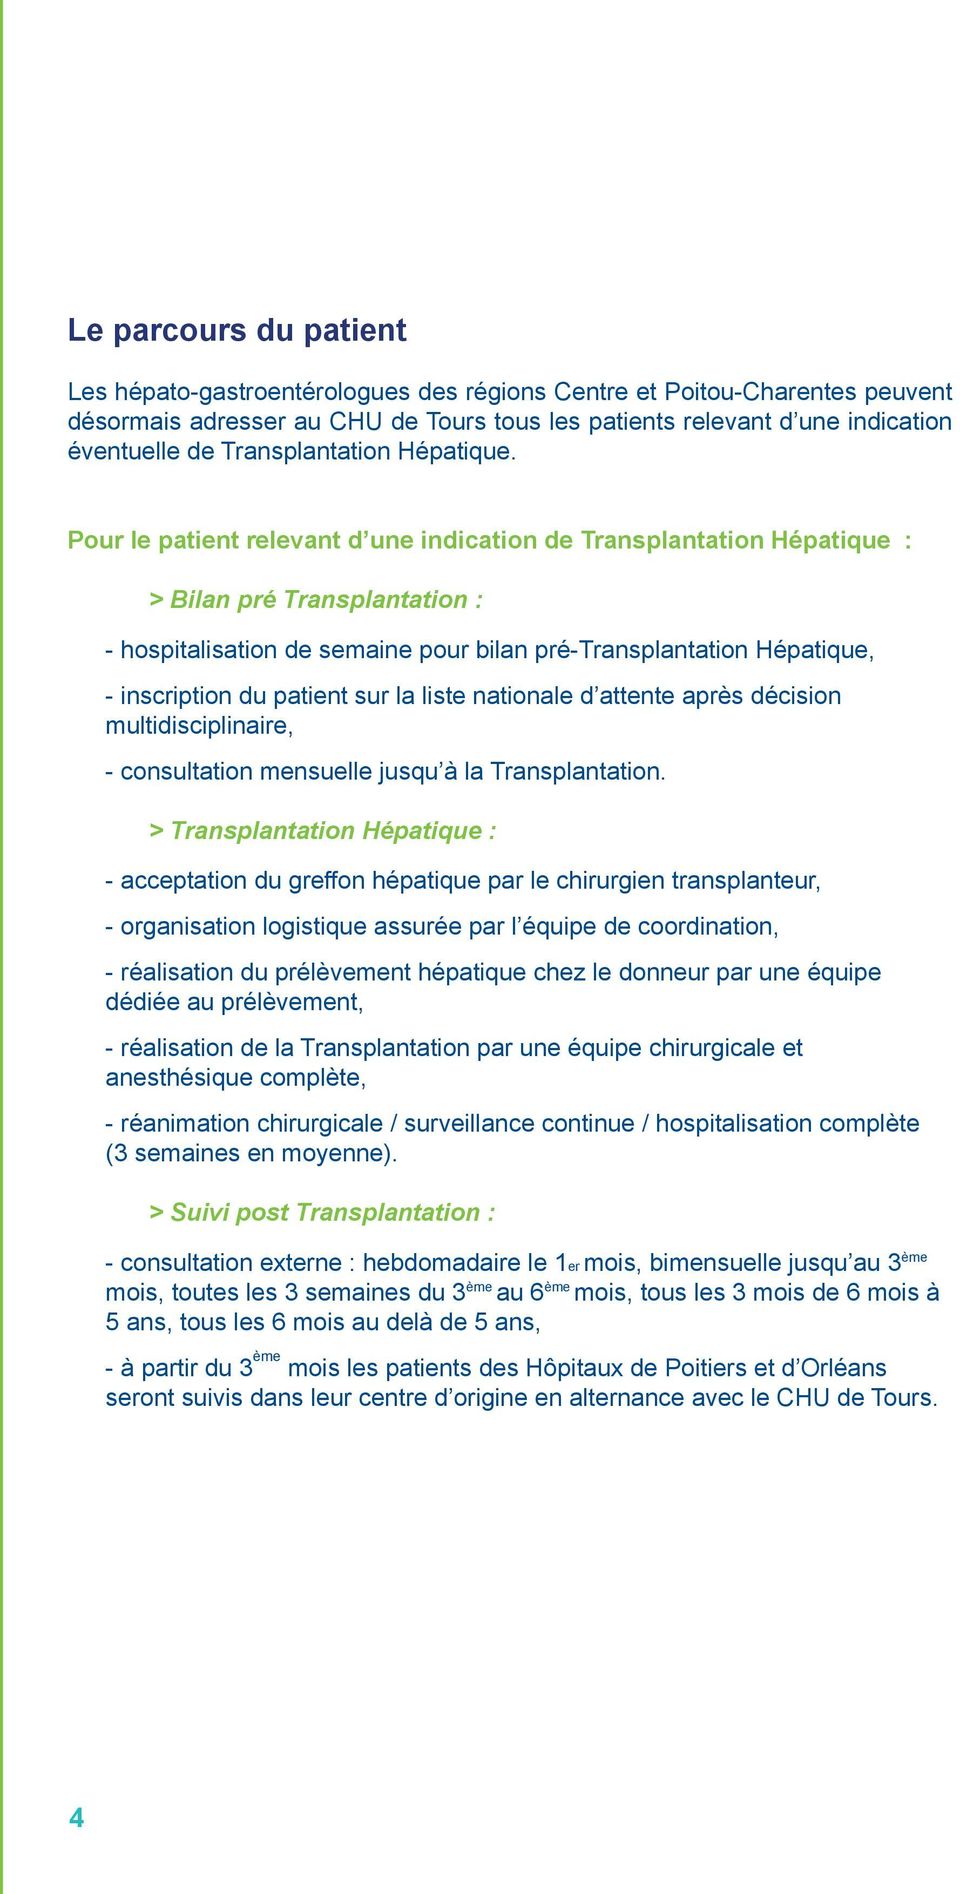 Pour le patient relevant d une indication de Transplantation Hépatique : > Bilan pré Transplantation : - hospitalisation de semaine pour bilan pré-transplantation Hépatique, - inscription du patient